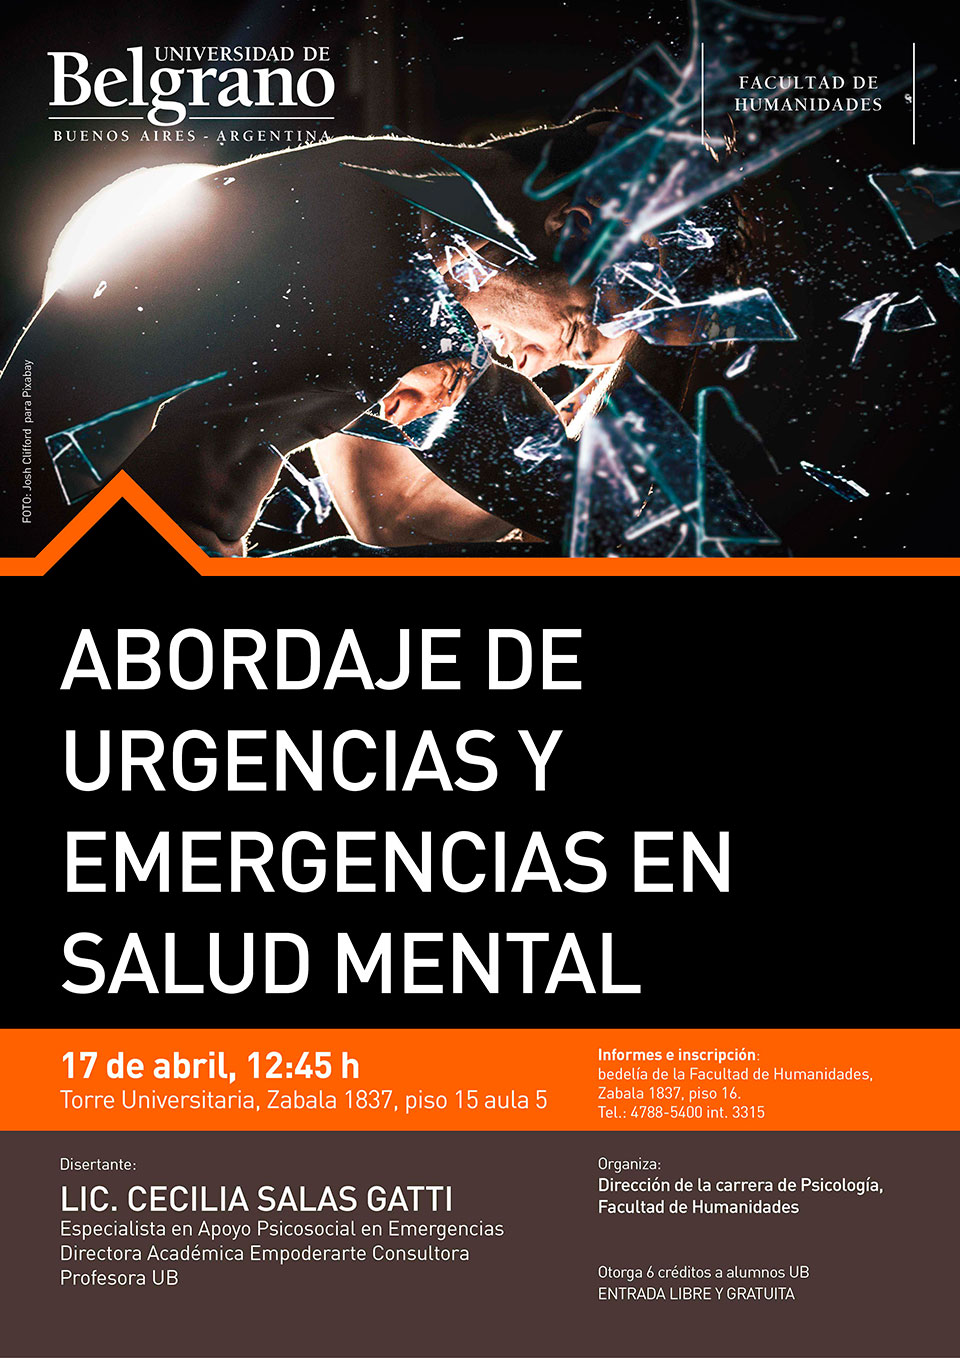 Universidad de Belgrano | Facultad de Humanidades | Abordaje de Emergencias y Urgencias en Salud Mental